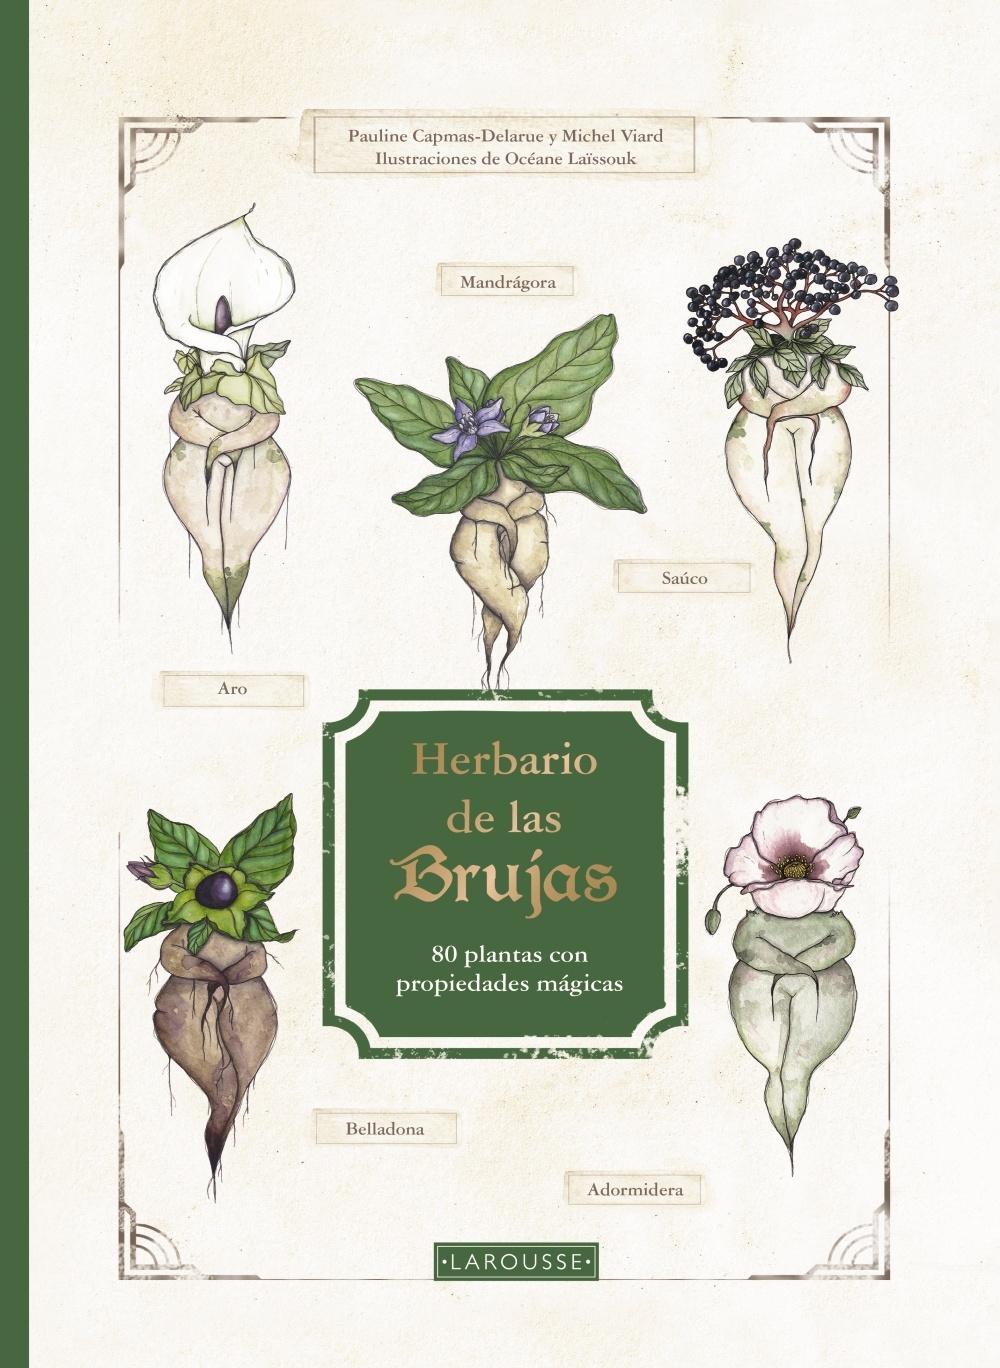 Herbario de las Brujas "80 Plantas con Propiedades Mágicas". 